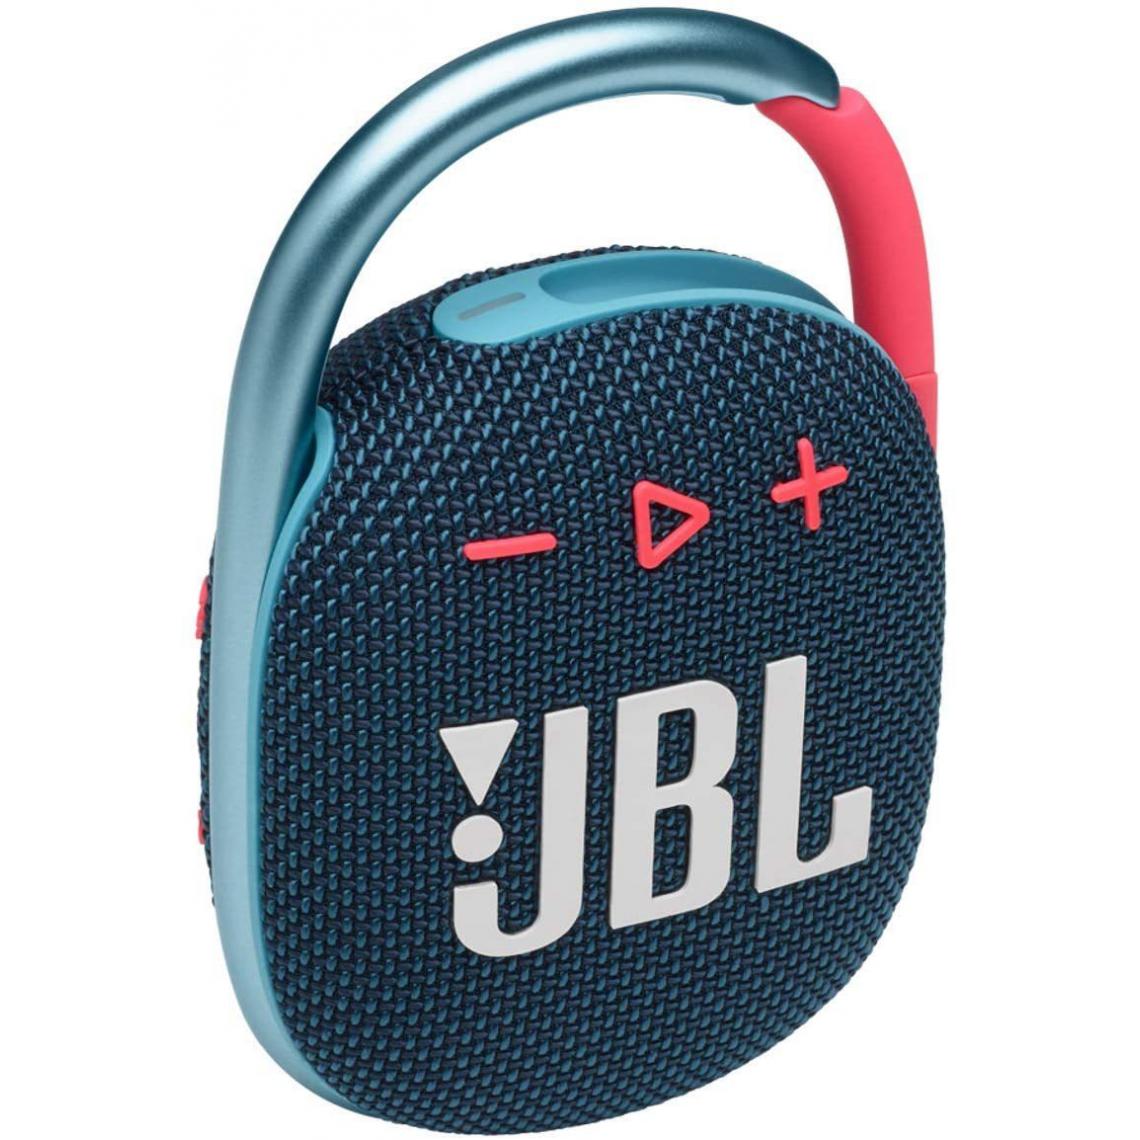 Chrono - JBL CLIP 4 – Enceinte Bluetooth portable et légère avec mousqueton intégré – Étanche à l’eau et à la poussière – Autonomie 12 hrs ,Bleu-Rose - Enceintes Hifi